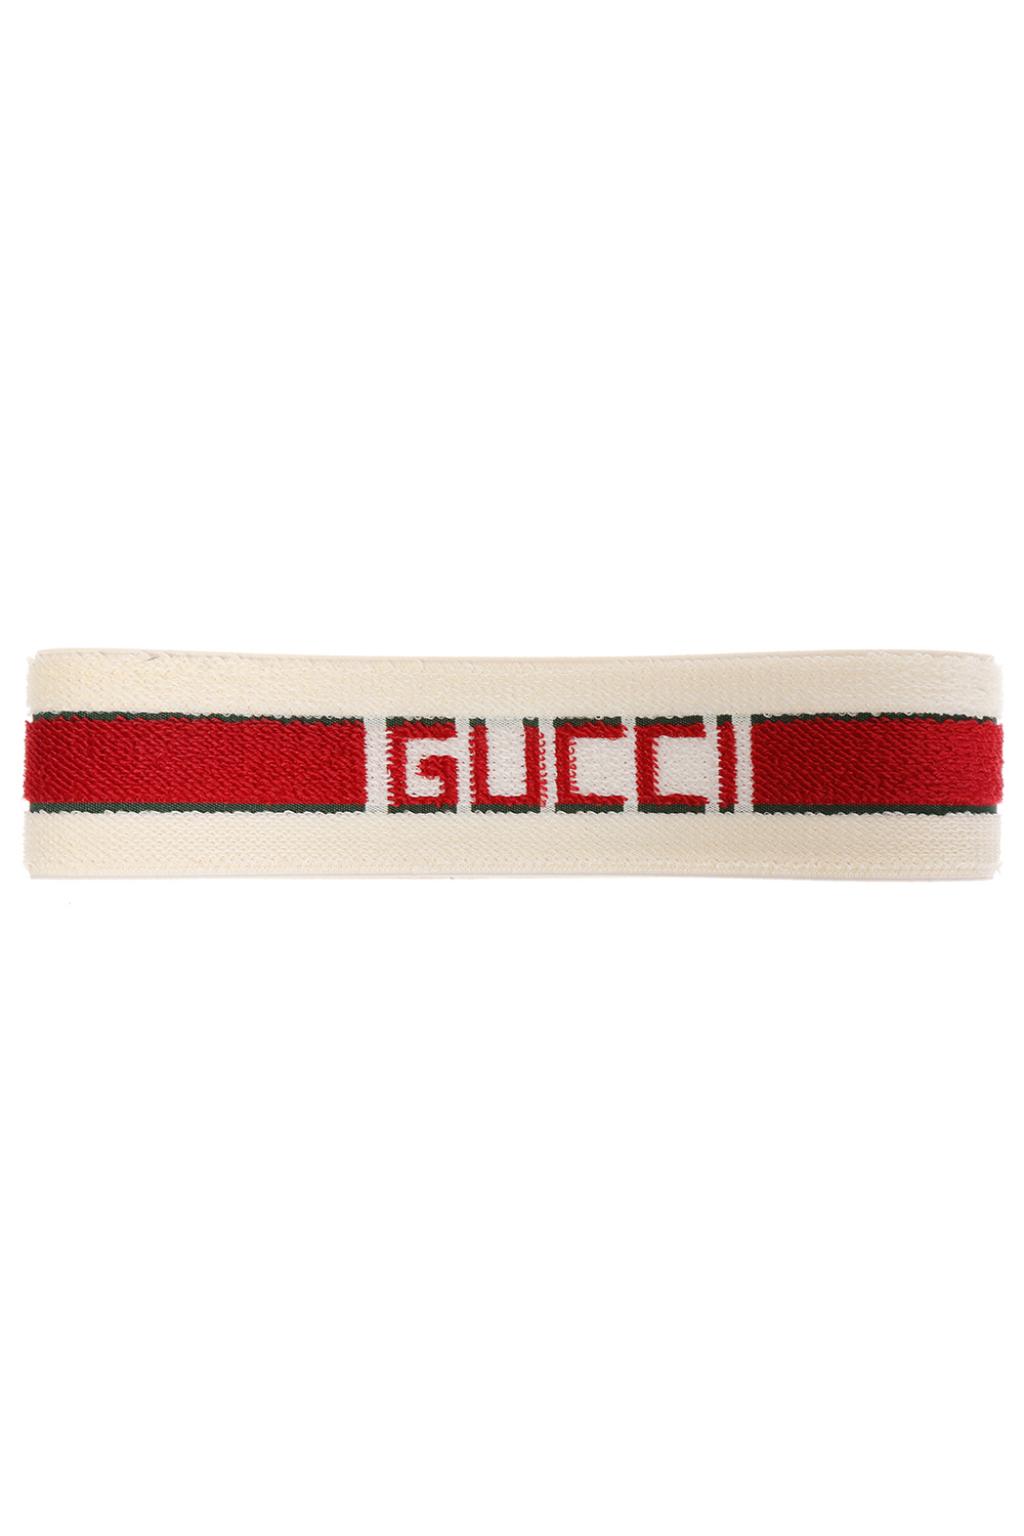 Gucci Logo band